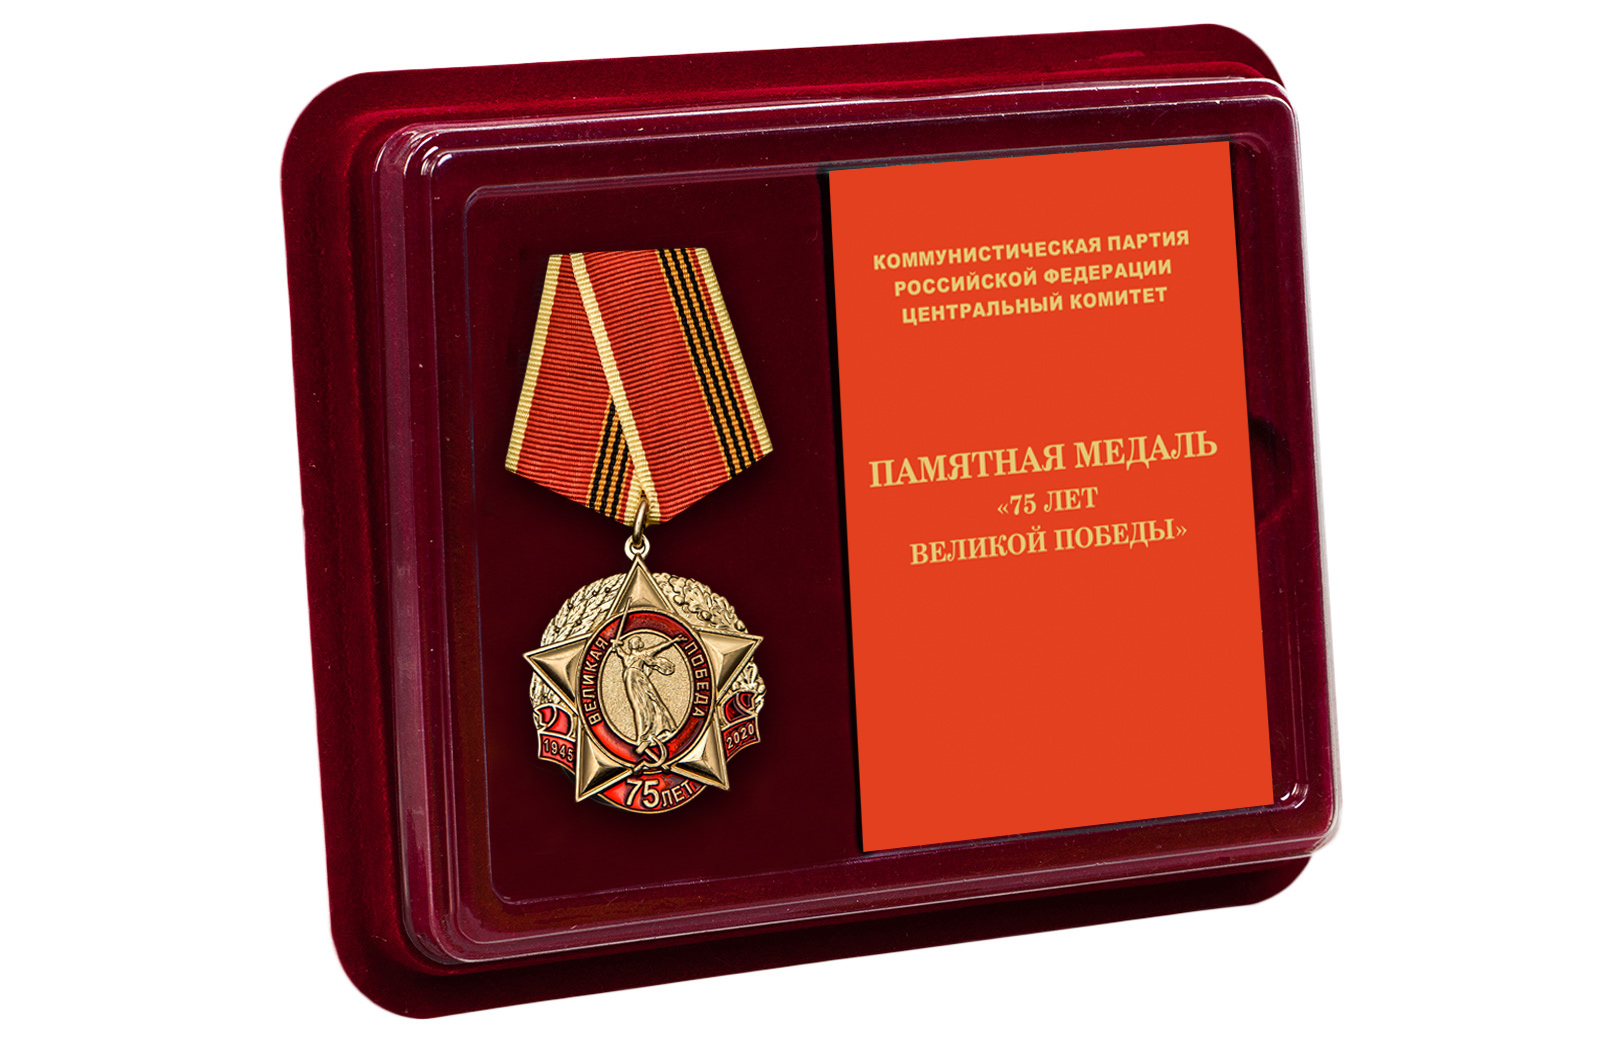 Купить медаль 75 лет Великой Победы КПРФ по экономичной цене